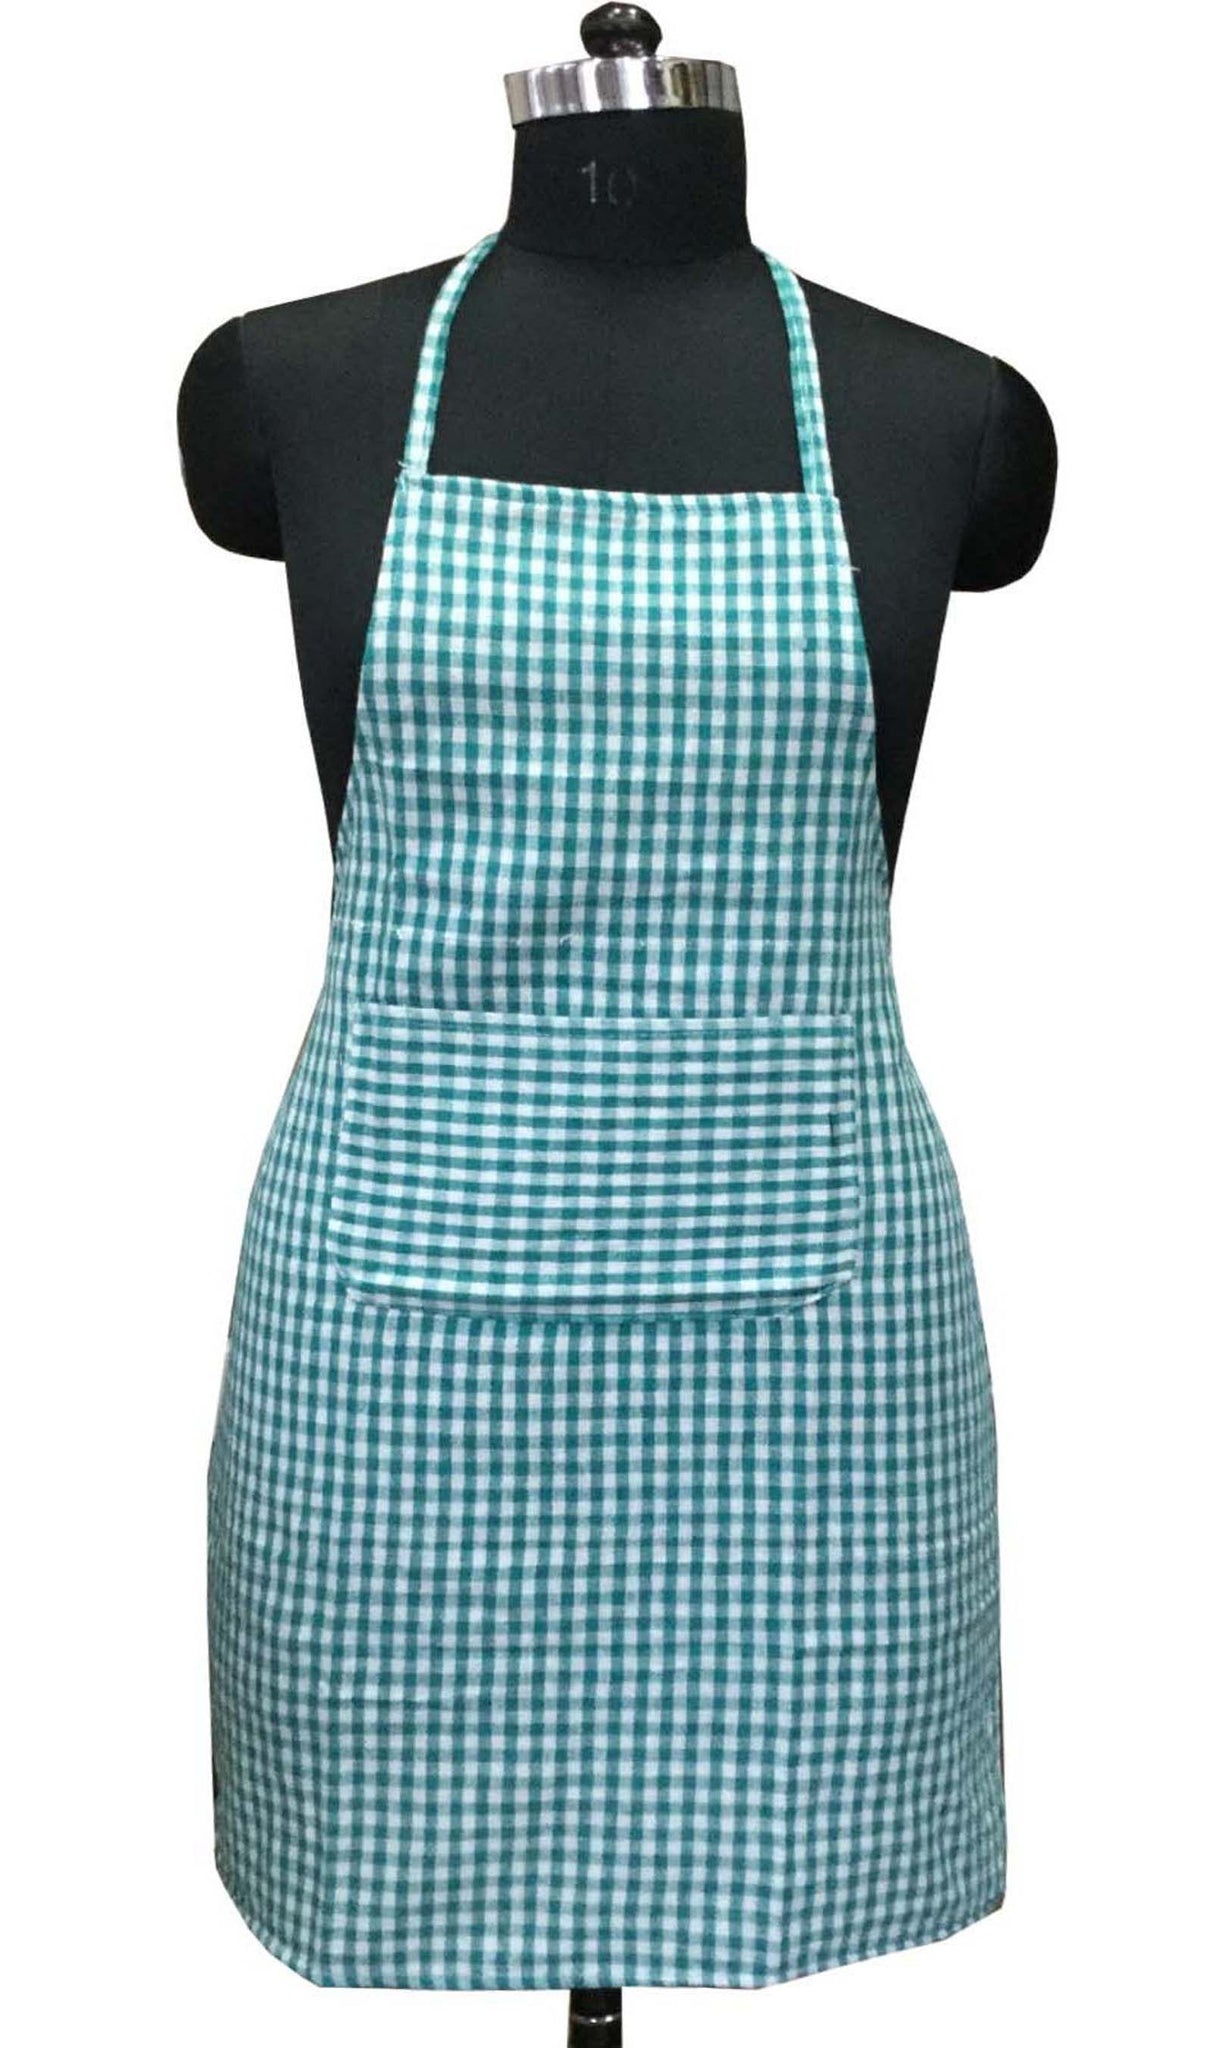 Lushomes apron for women, Green Checks apron for kitchen, kitchen apron for Men Women, waterproof apron, plastic apron Backing for kitchen, Cooking Apron, aprint, kitchen dress (62x82 Cms, Set of 1)